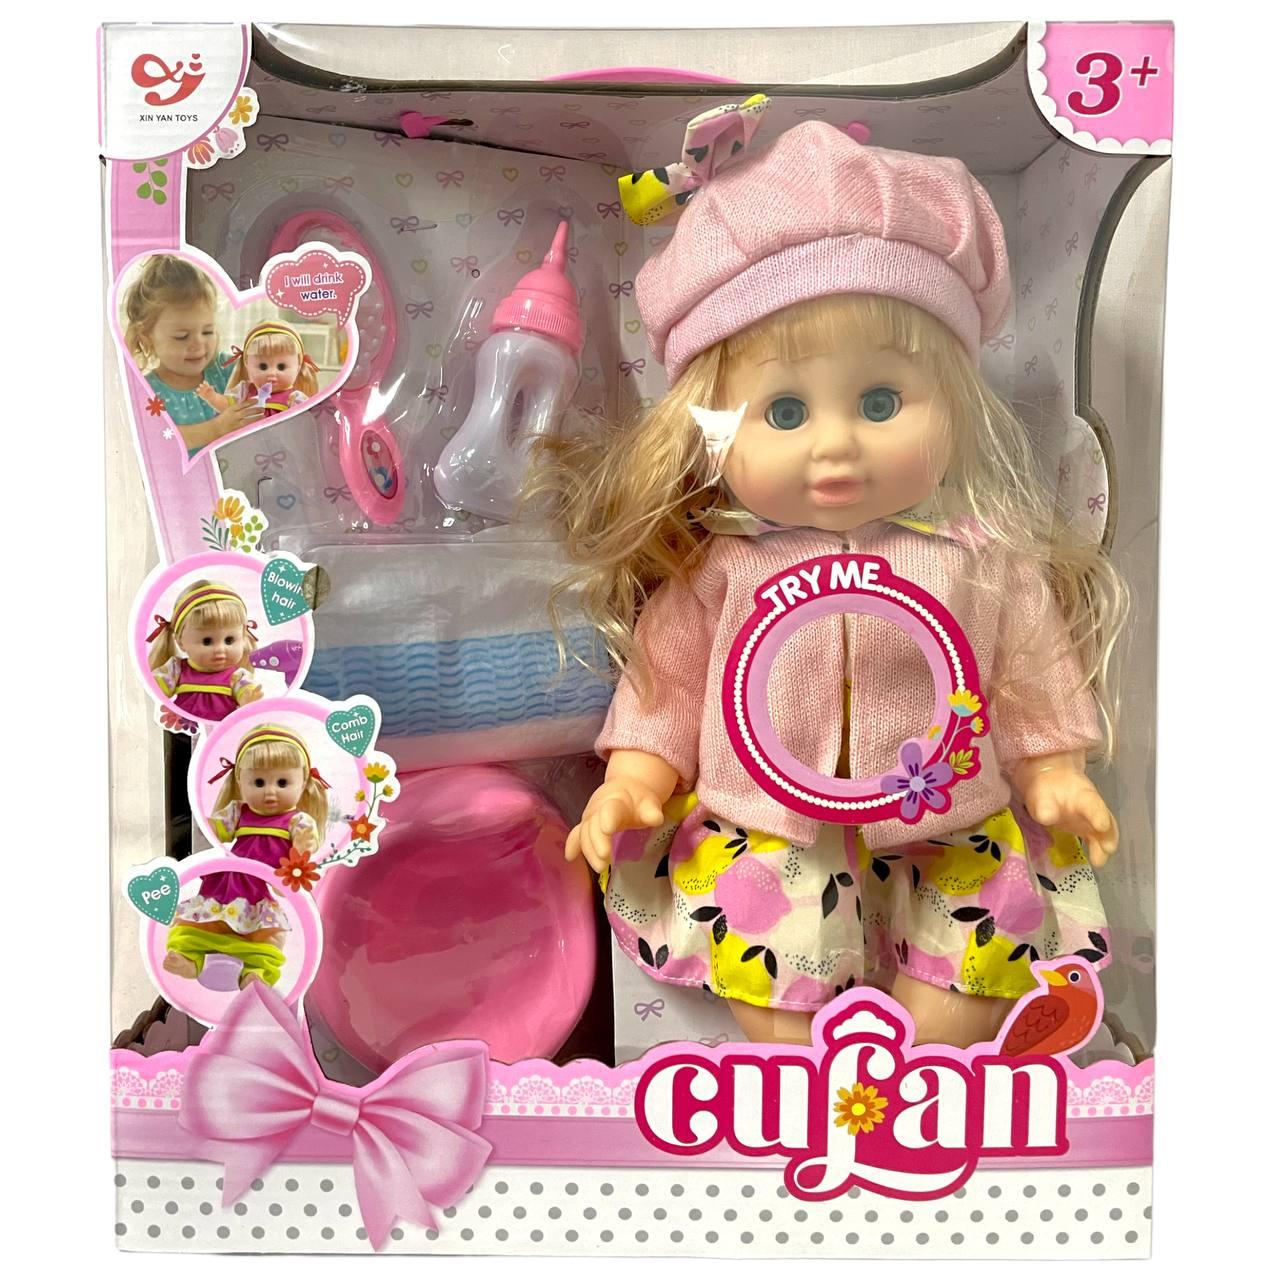 8399B Cufan Кукла в одежде с аксесс. (горшок,памперс, расческа, бутылочка)  отправляем в разобранном виде (id 105751005)